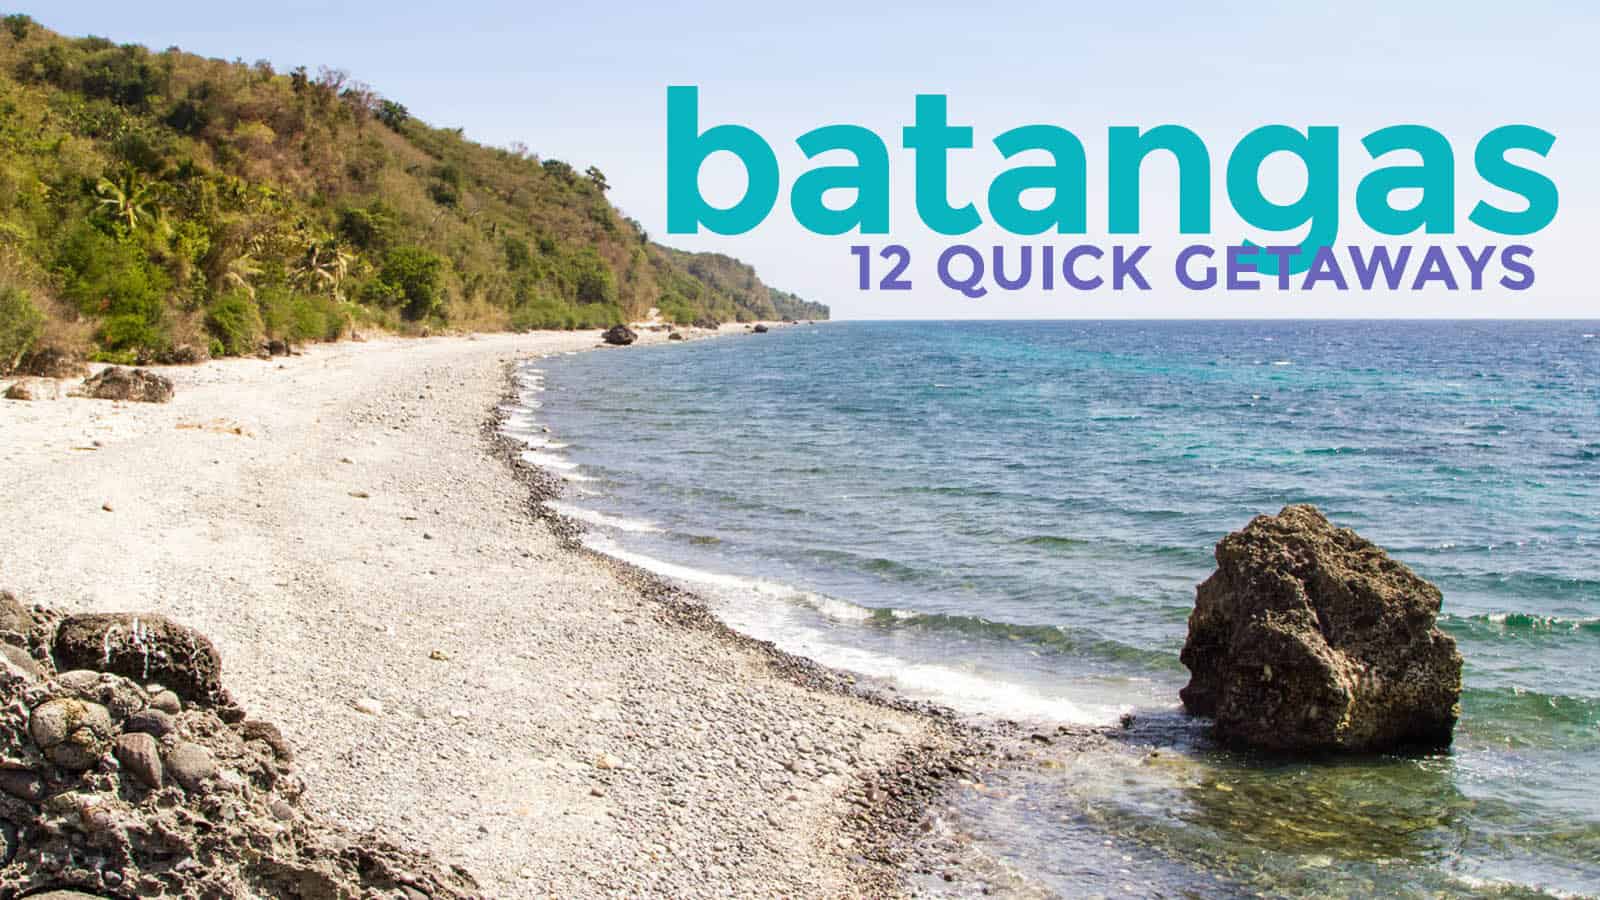 你可以从马尼拉轻松游览的12个巴丹加旅游景点